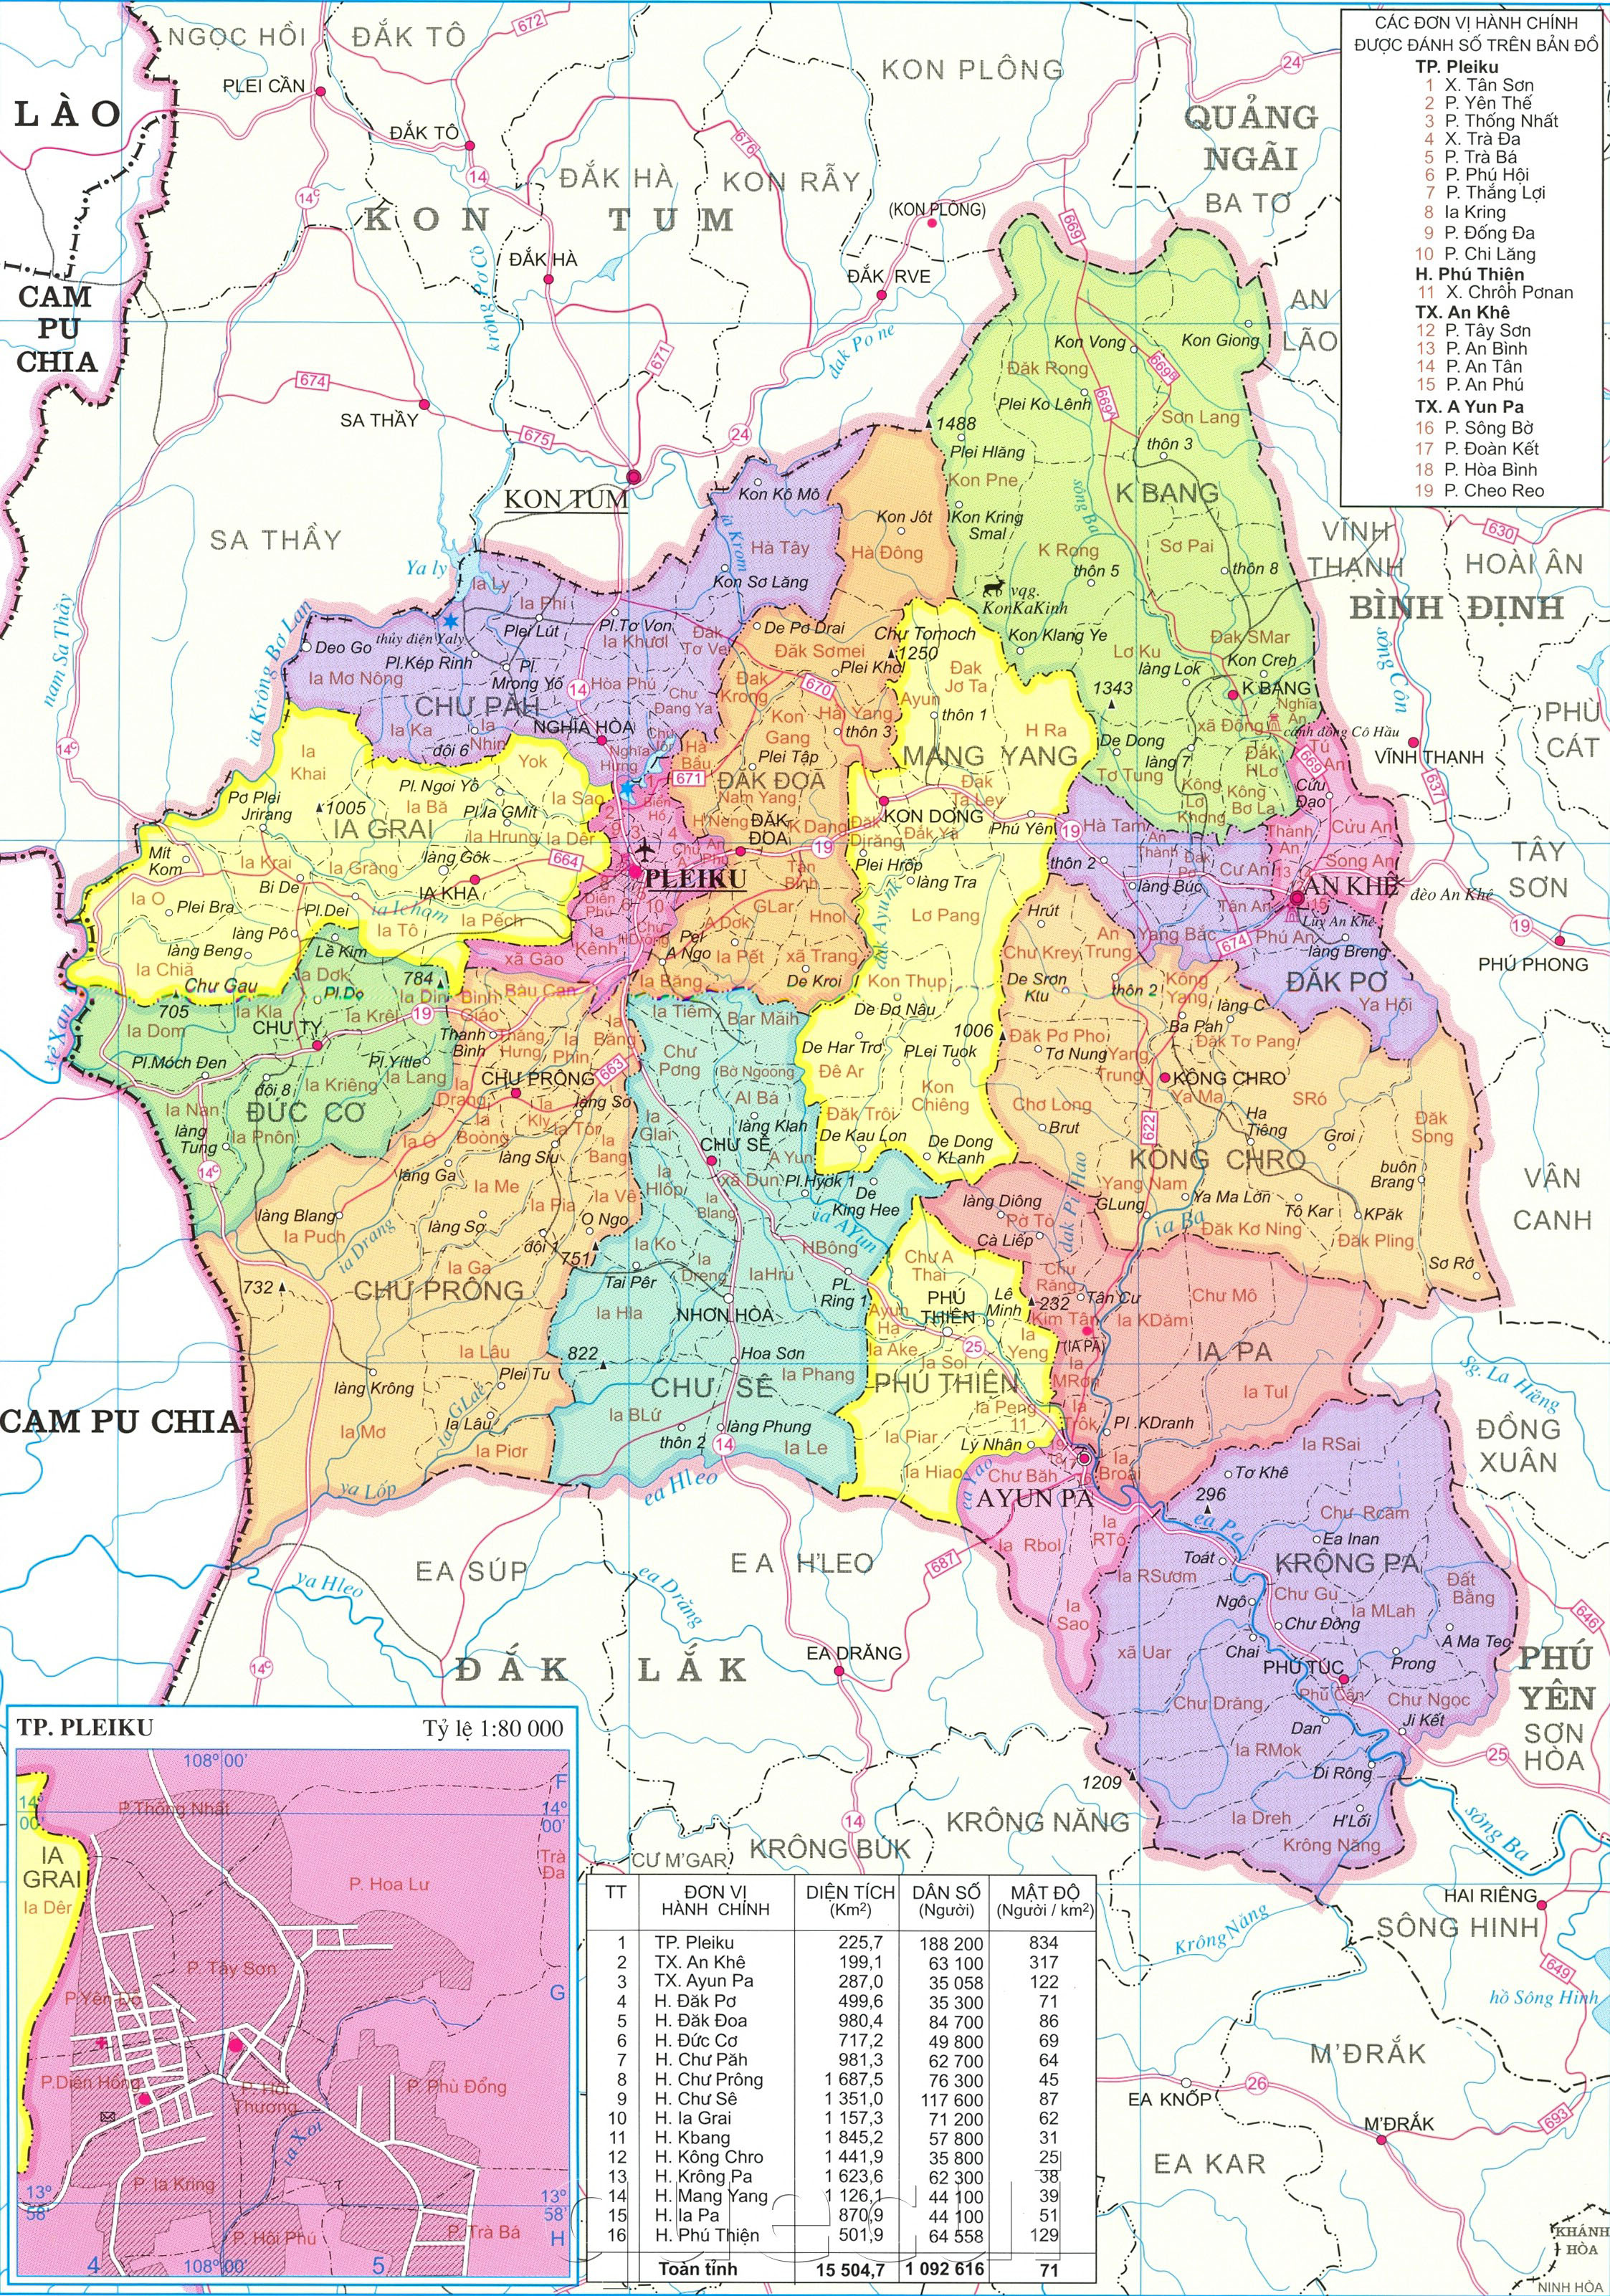 Bản đồ Hành chính tỉnh Gia Lai 2022: Với bản đồ hành chính tỉnh Gia Lai 2022, bạn sẽ có một cái nhìn tổng quan về cơ cấu hành chính và phân cấp các đơn vị hành chính trong tỉnh Gia Lai. Điều này sẽ giúp bạn dễ dàng tìm kiếm những thông tin và dịch vụ cần thiết khi đến Gia Lai.